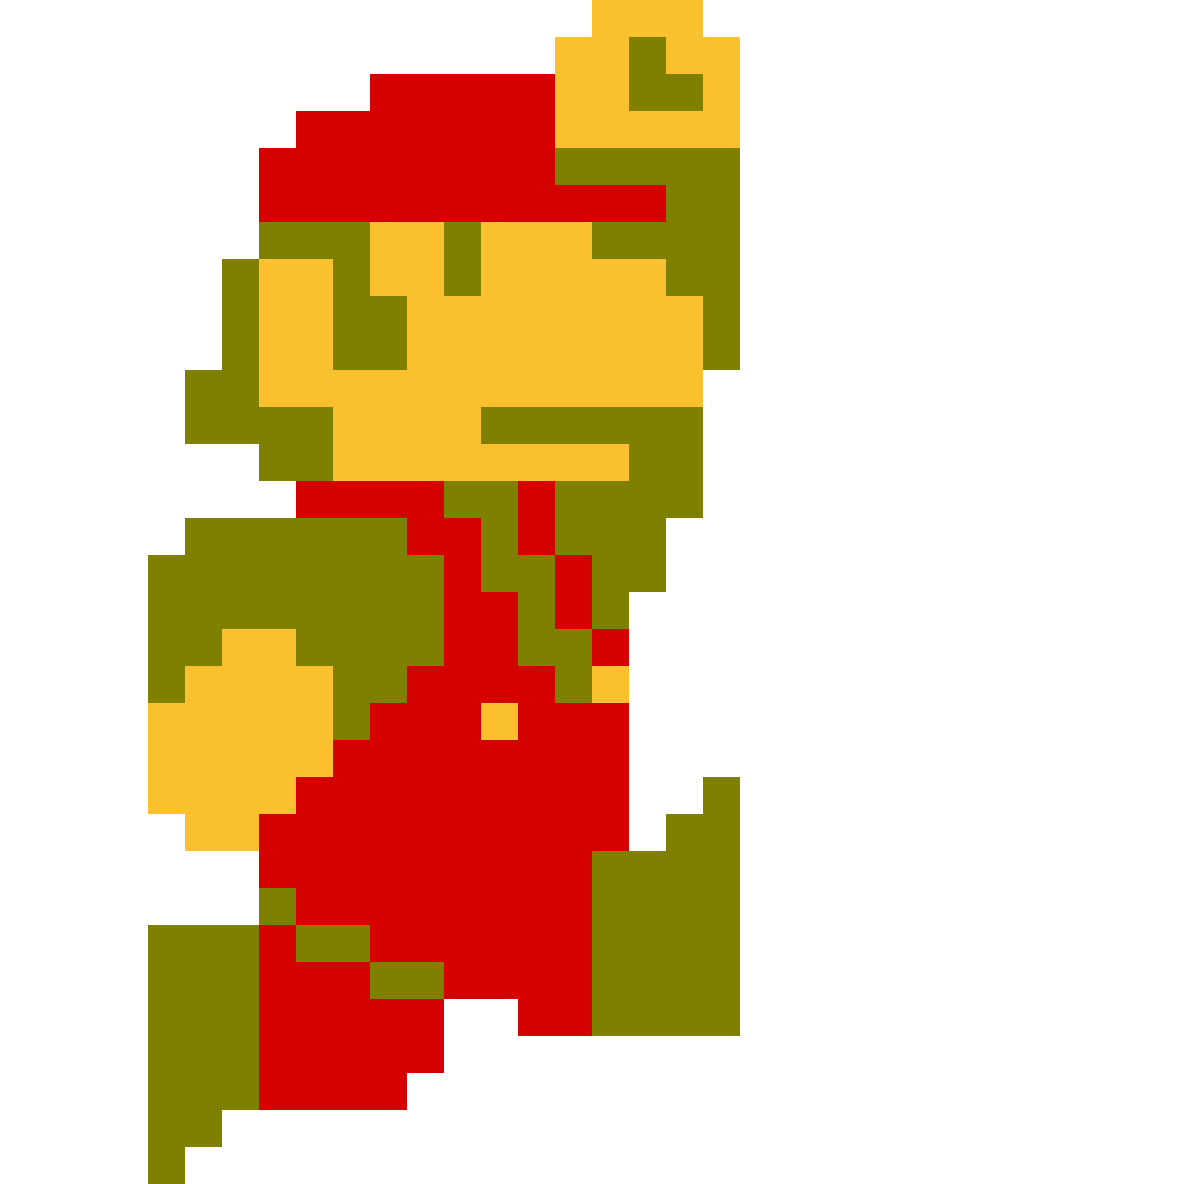 Марио спрайт для скретч. Марио 8 бит прыжок. Марио пиксельный спрайт. Марио бежит пиксельный. Скретч марио